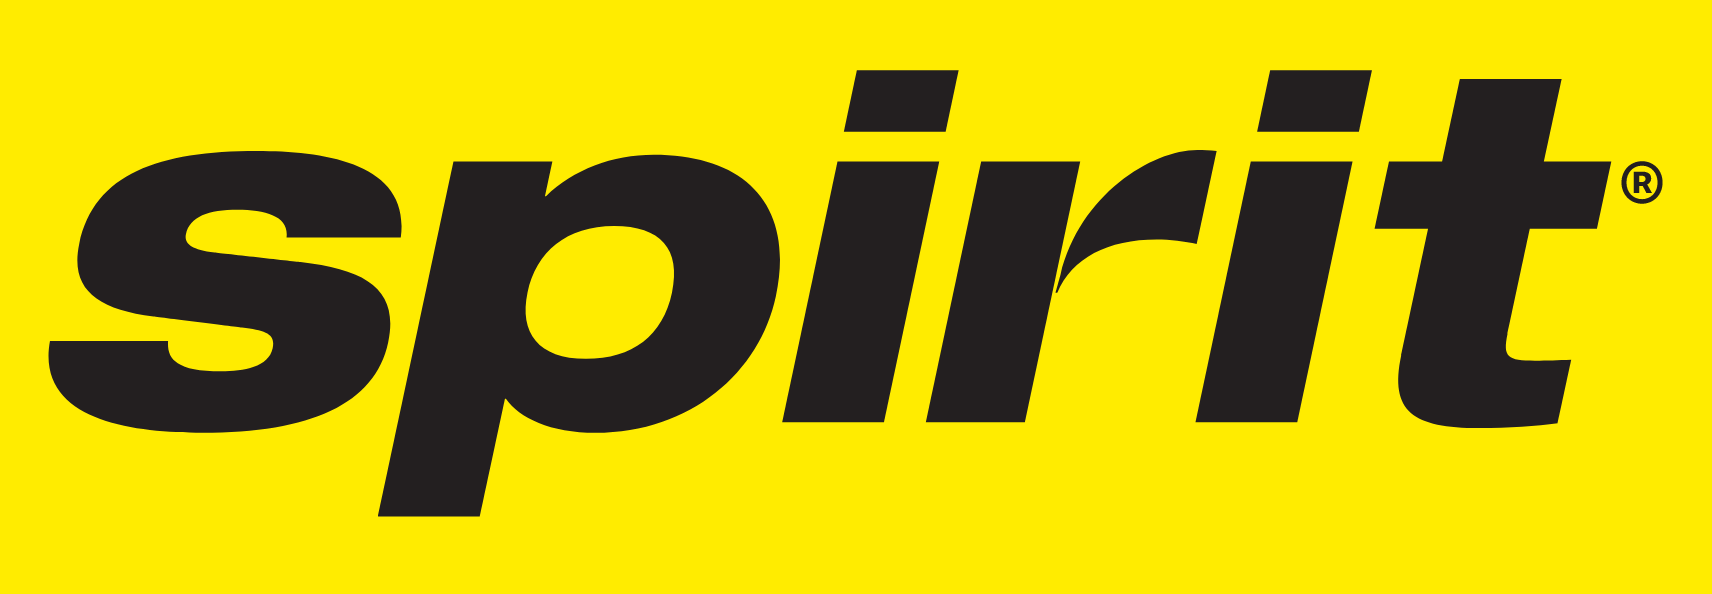 Spirit Airlines
 logo large (transparent PNG)